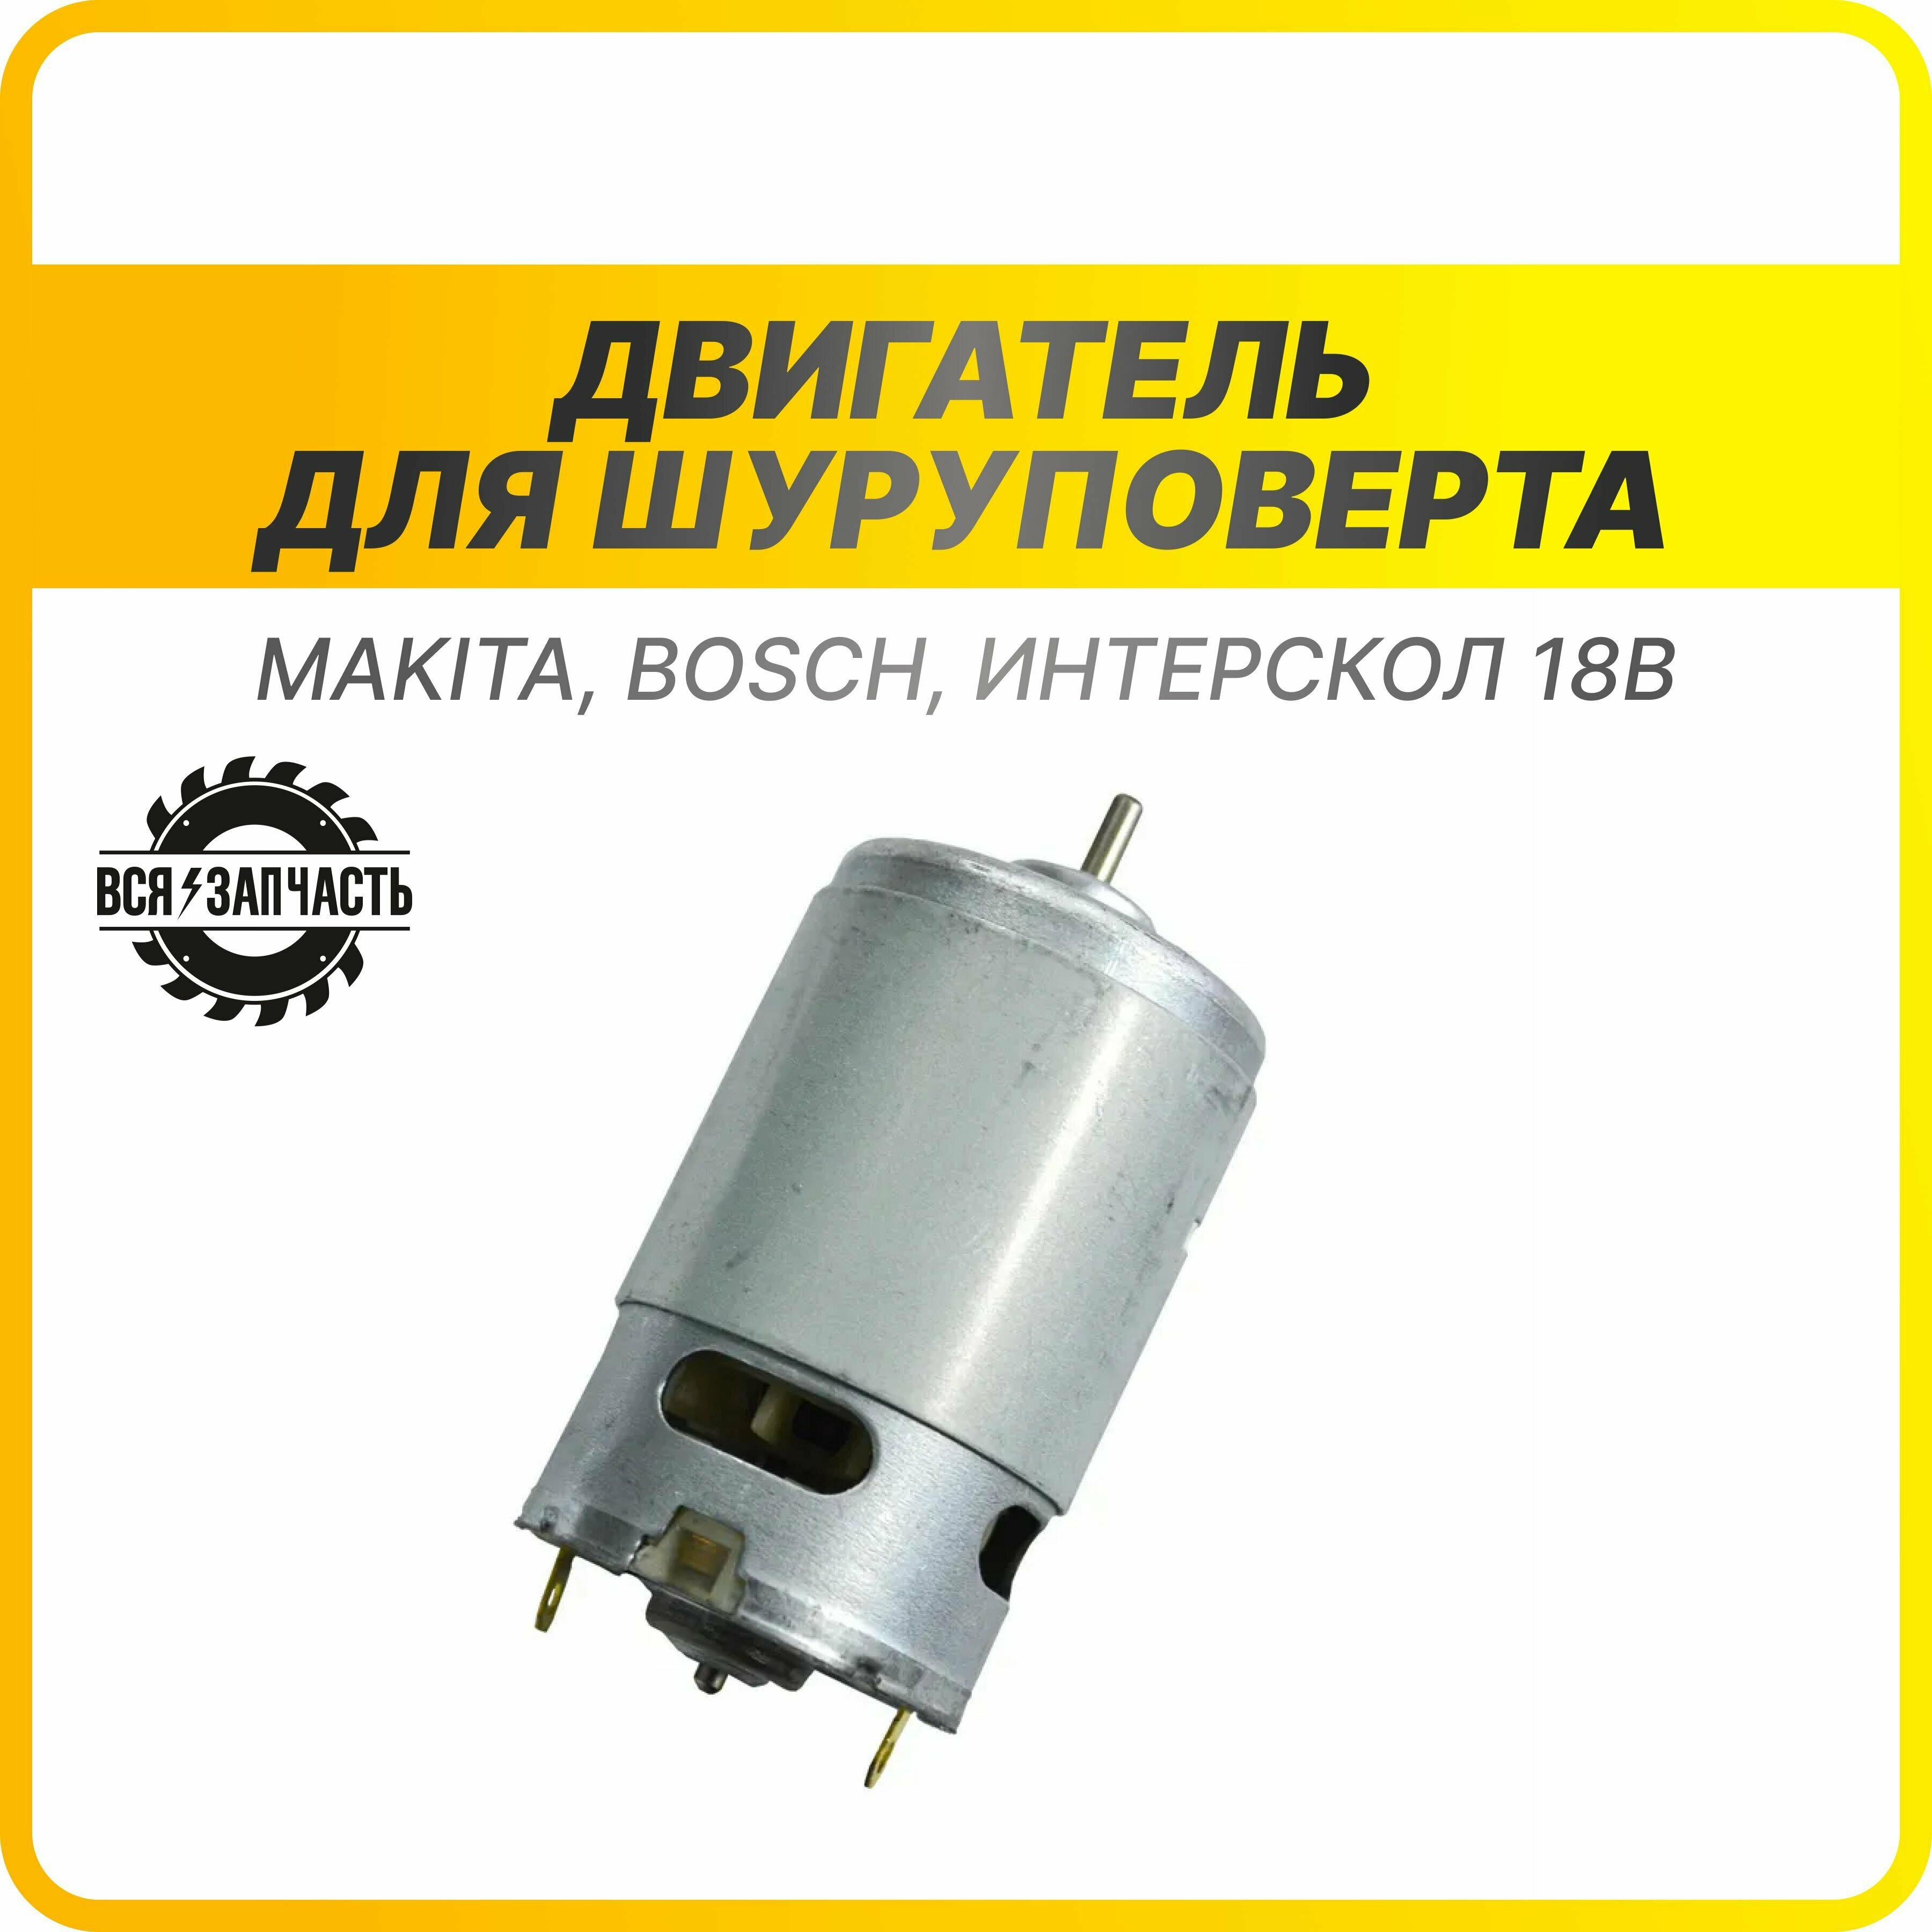 Двигатель для шуруповерта 18 В, без ответной шестерни, подходит для Makita, Bosch, Интерскол (010191 (18V))VZ